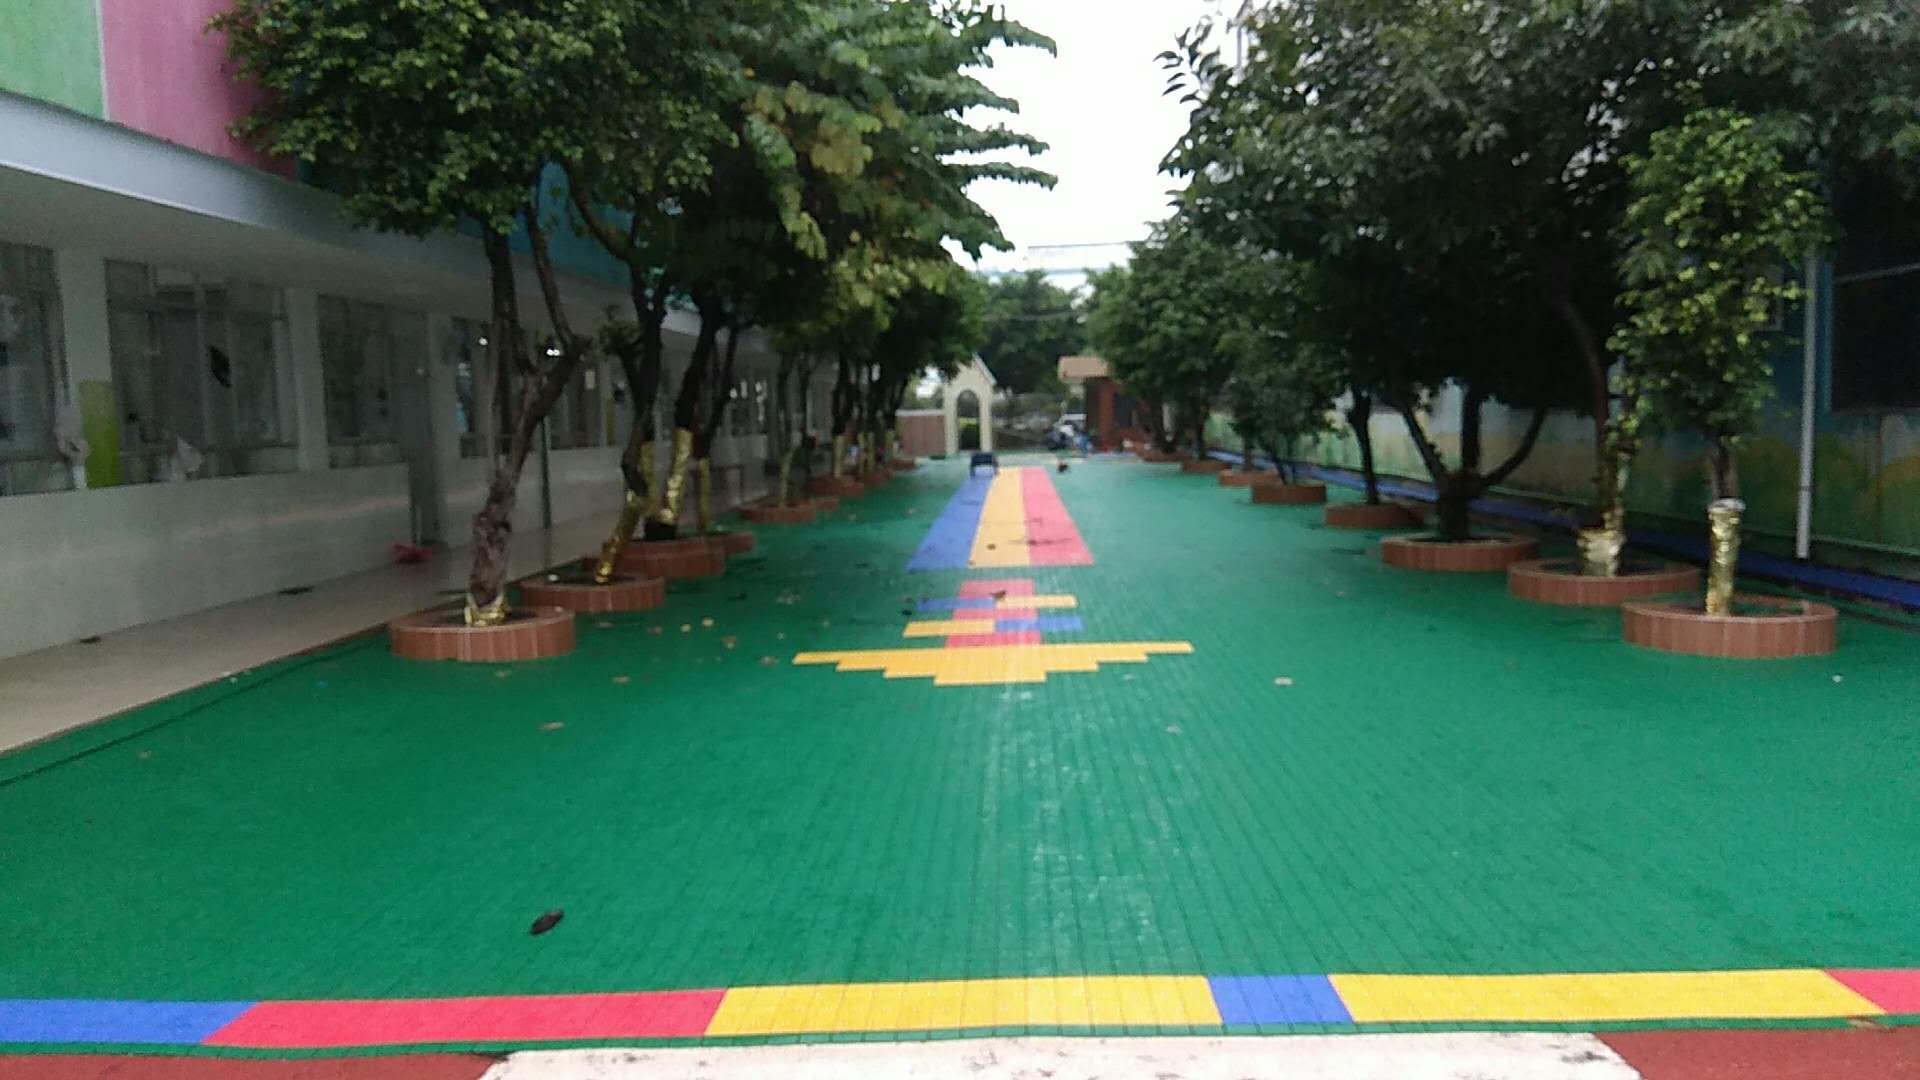 深圳市福海幼儿园悬浮地板拼装完工  承接国内外地面拼装工程   设计、采购、施工一体化服务